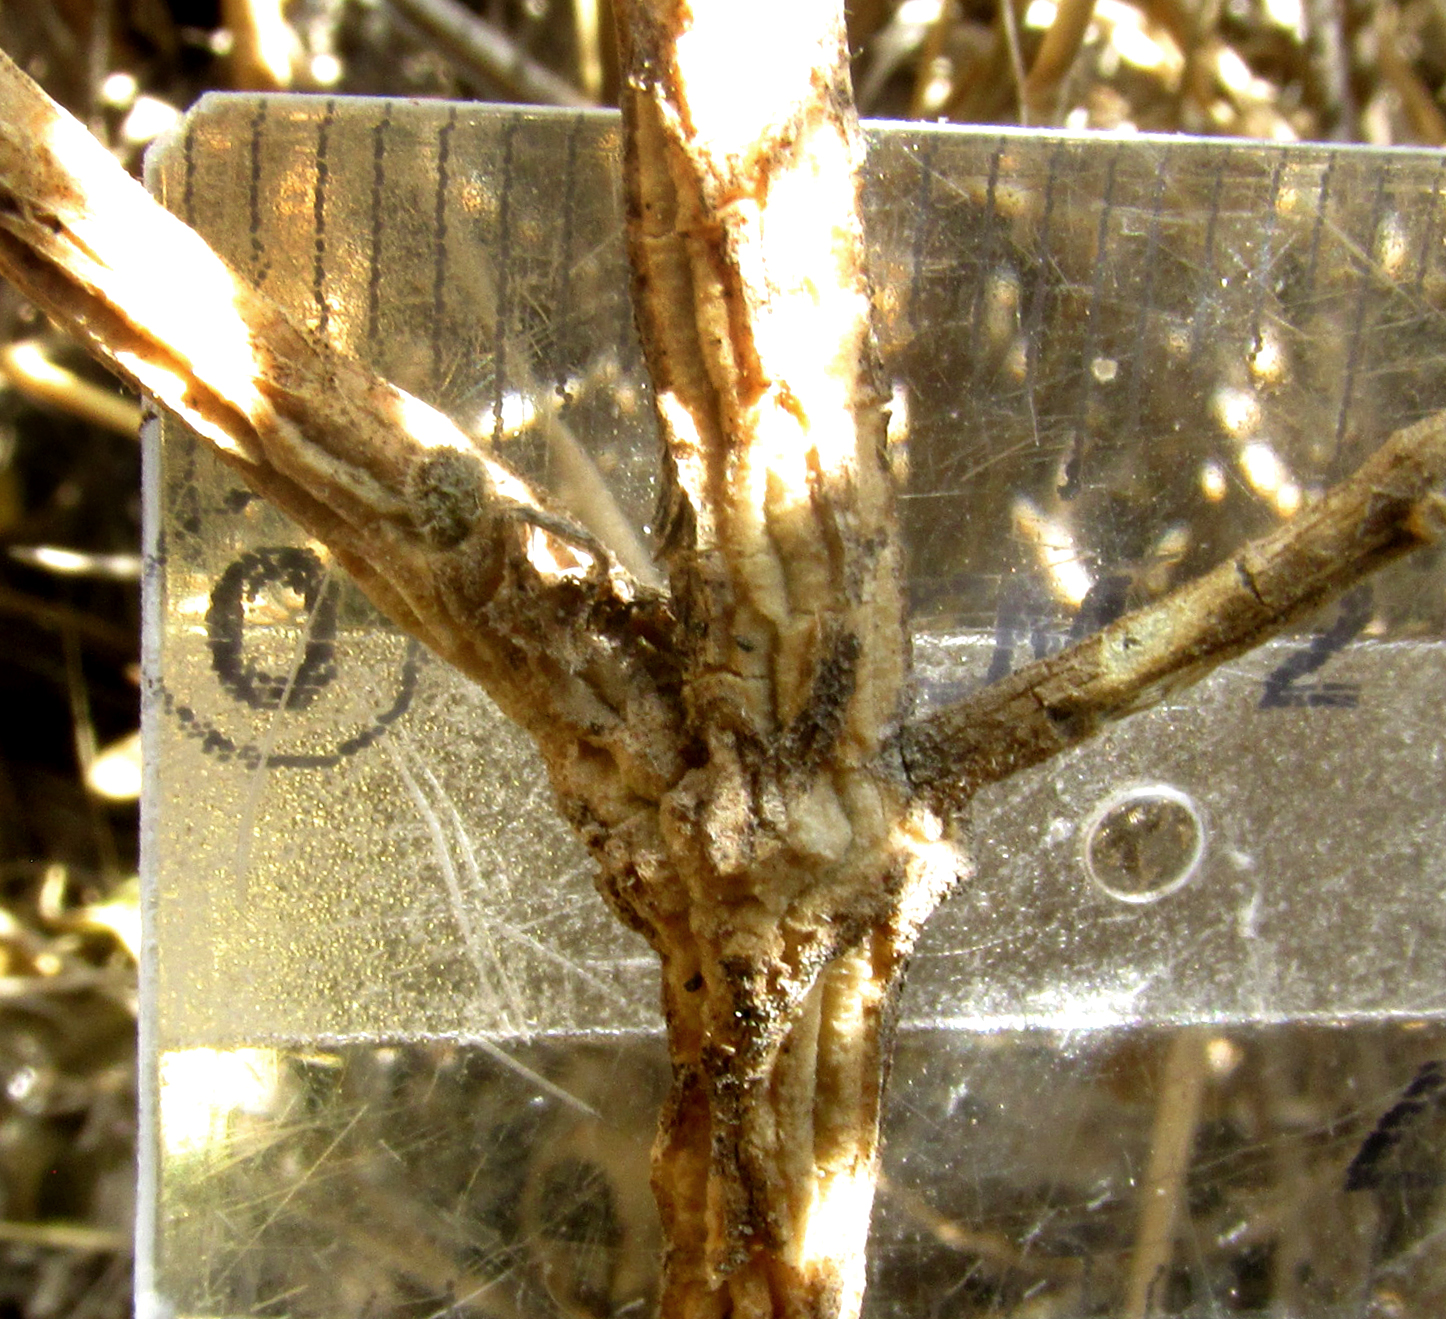 CHTHAMALIA OJADAPANTHA, lower stem's corky ridges and branching node